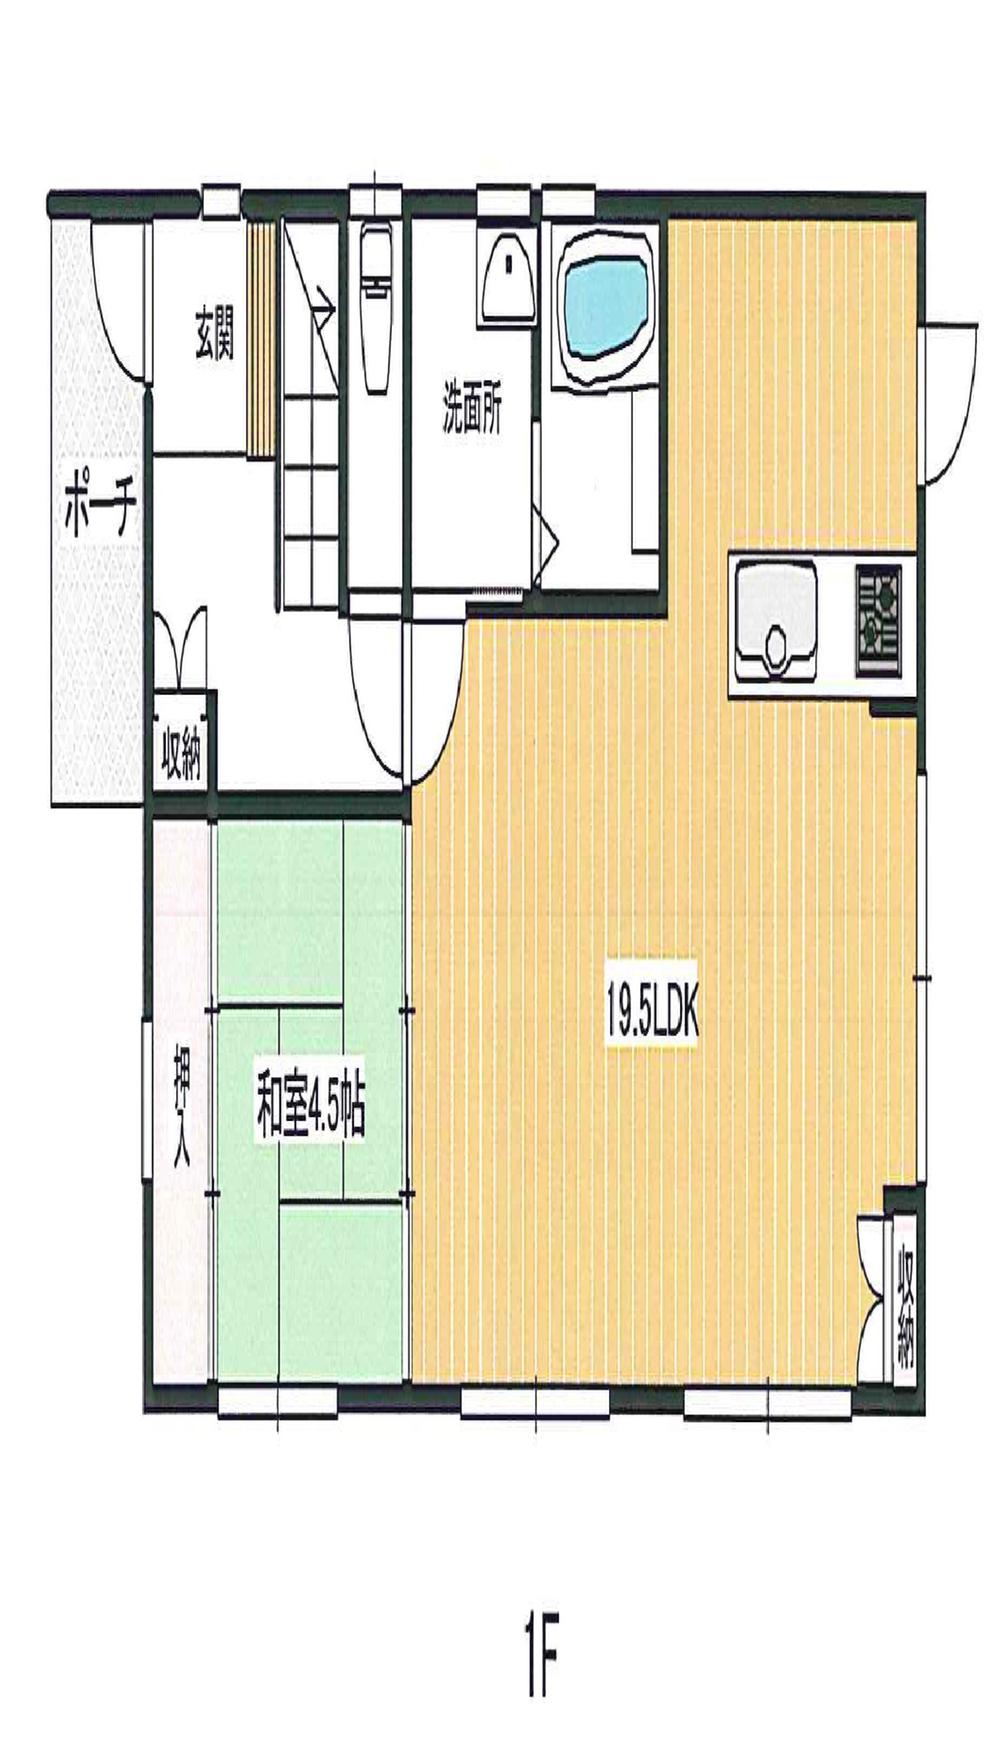 Floor plan. 24,300,000 yen, 4LDK + S (storeroom), Land area 175.12 sq m , Building area 106.4 sq m 1F (19.5LDK ・ 4.5 sum)